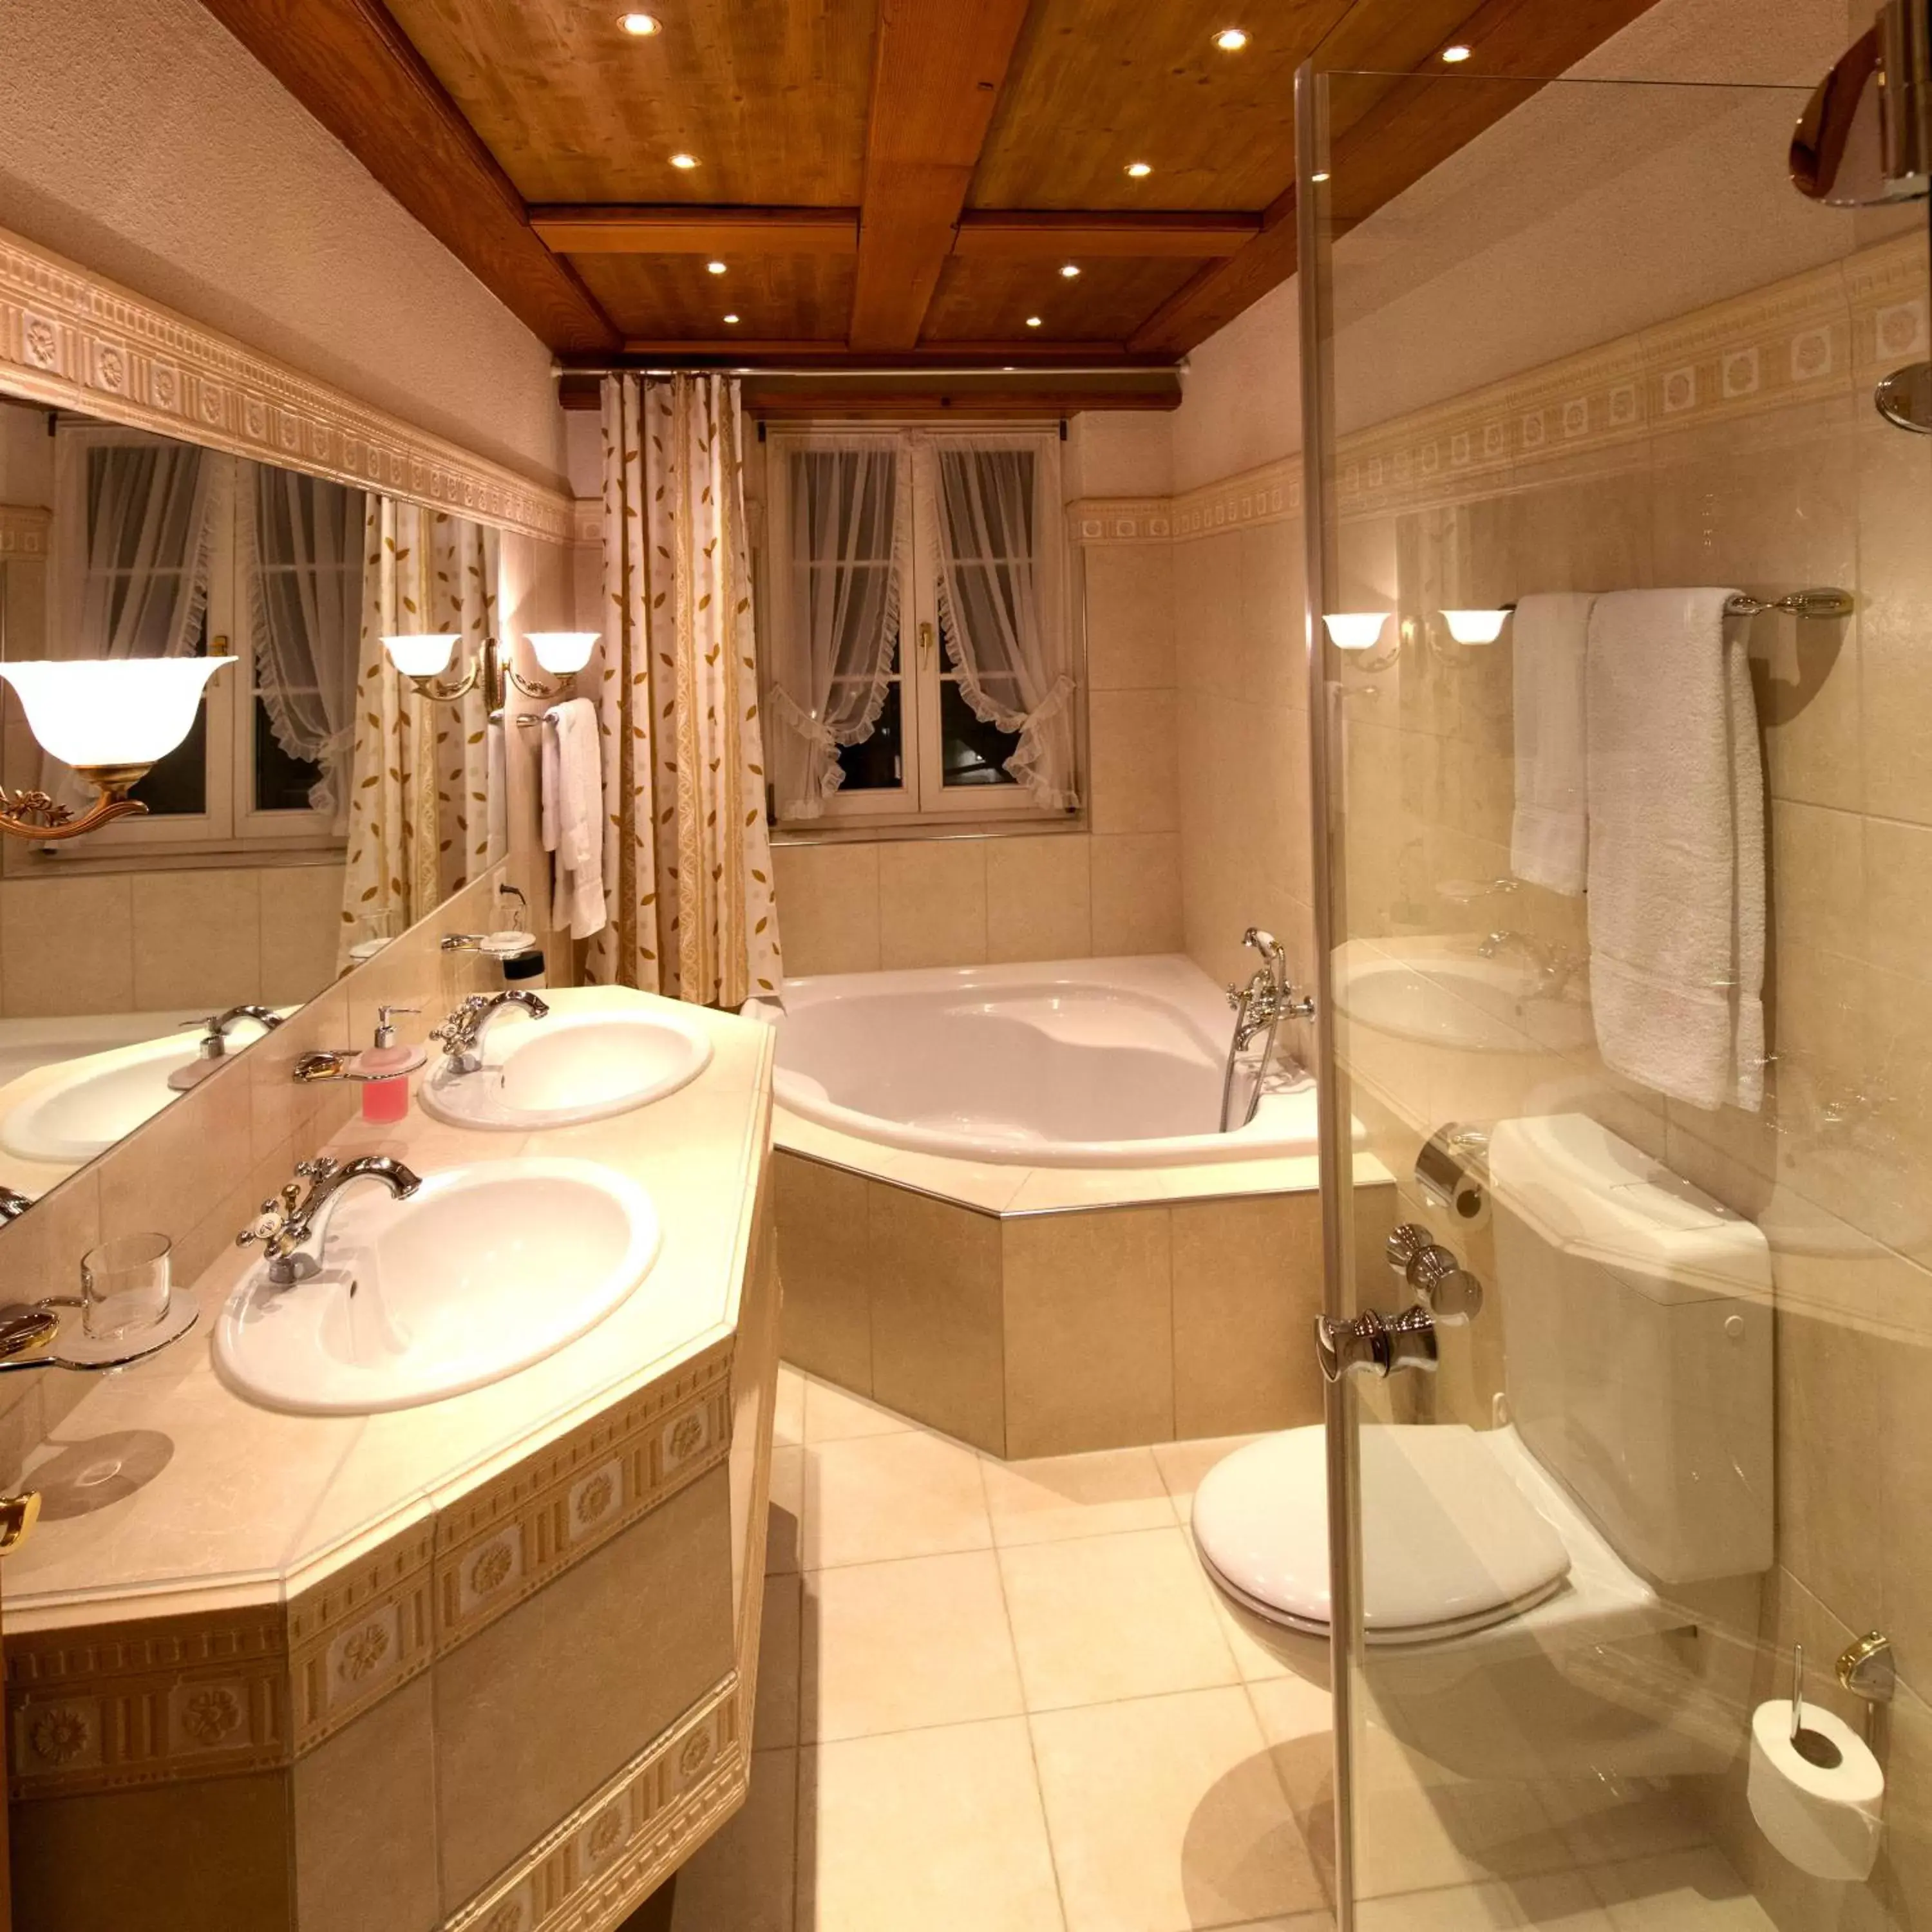 Bathroom in Romantik Hotel zu den drei Sternen